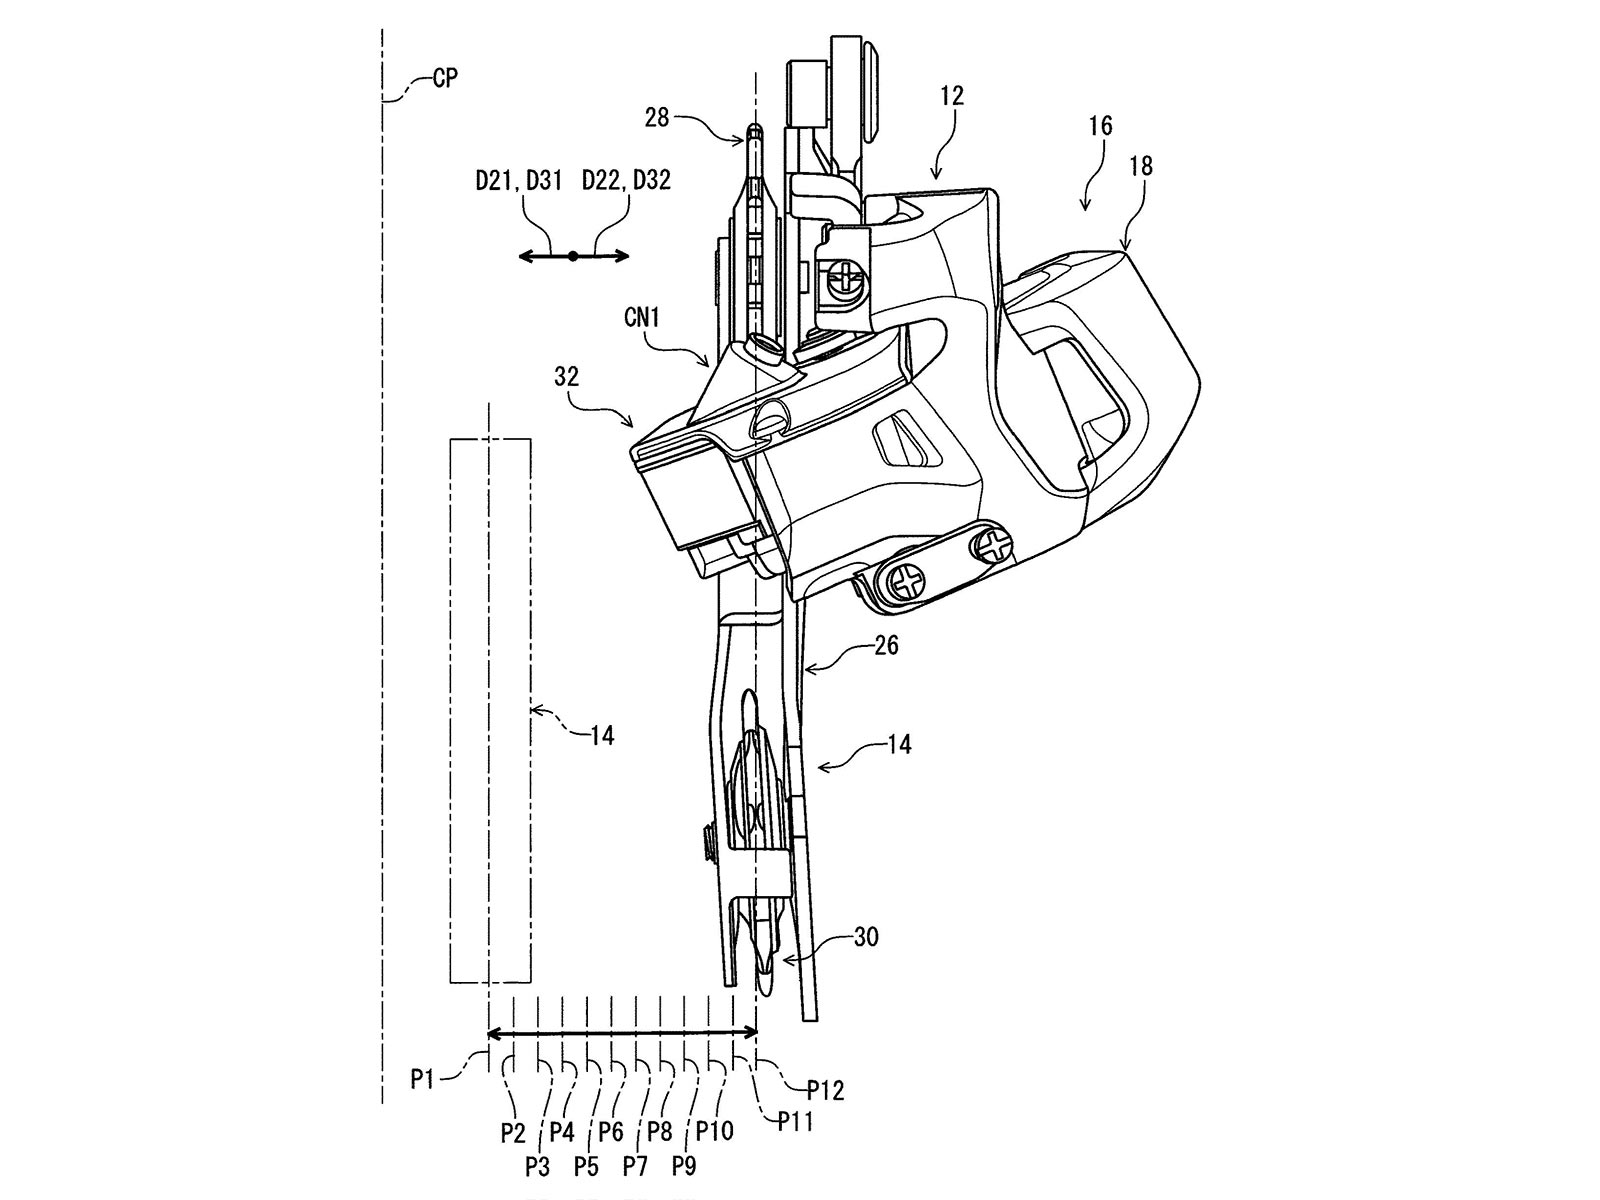 Concetto di prototipo di deragliatore a cambio elettronico galleggiante resistente agli urti con brevetto Shimano Di2, deragliatore posteriore